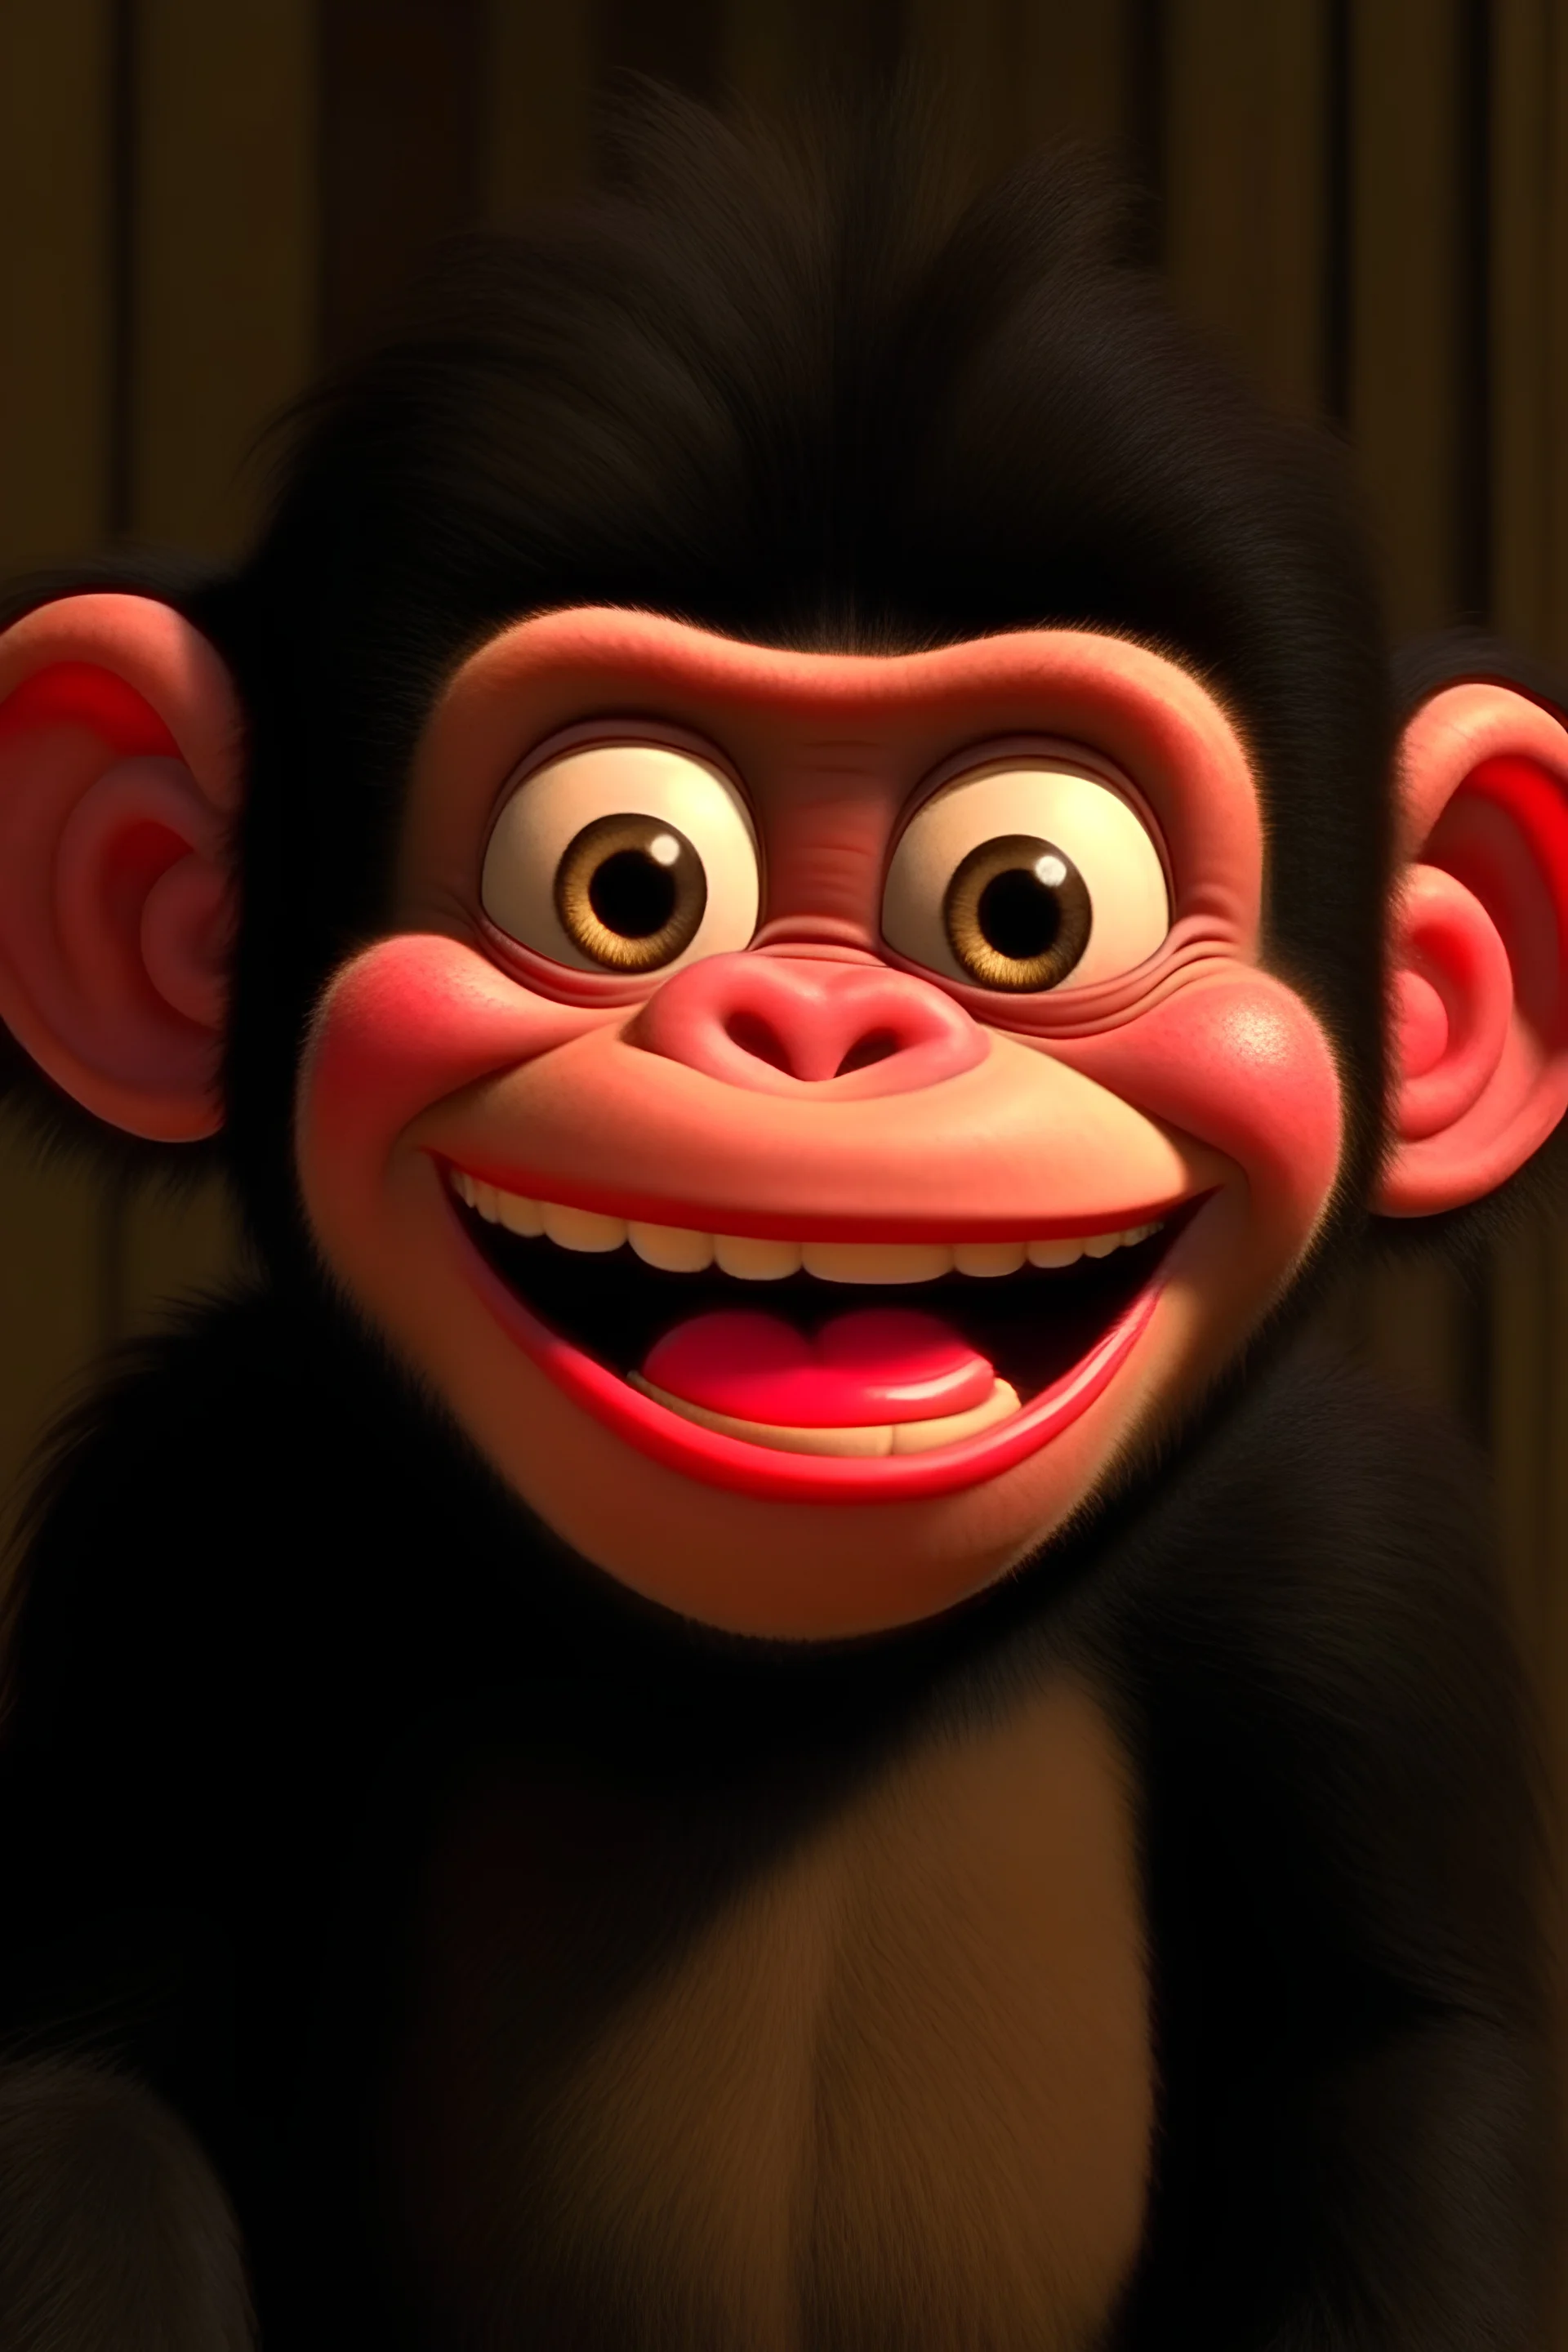 baby chimpanzee smiling pixar